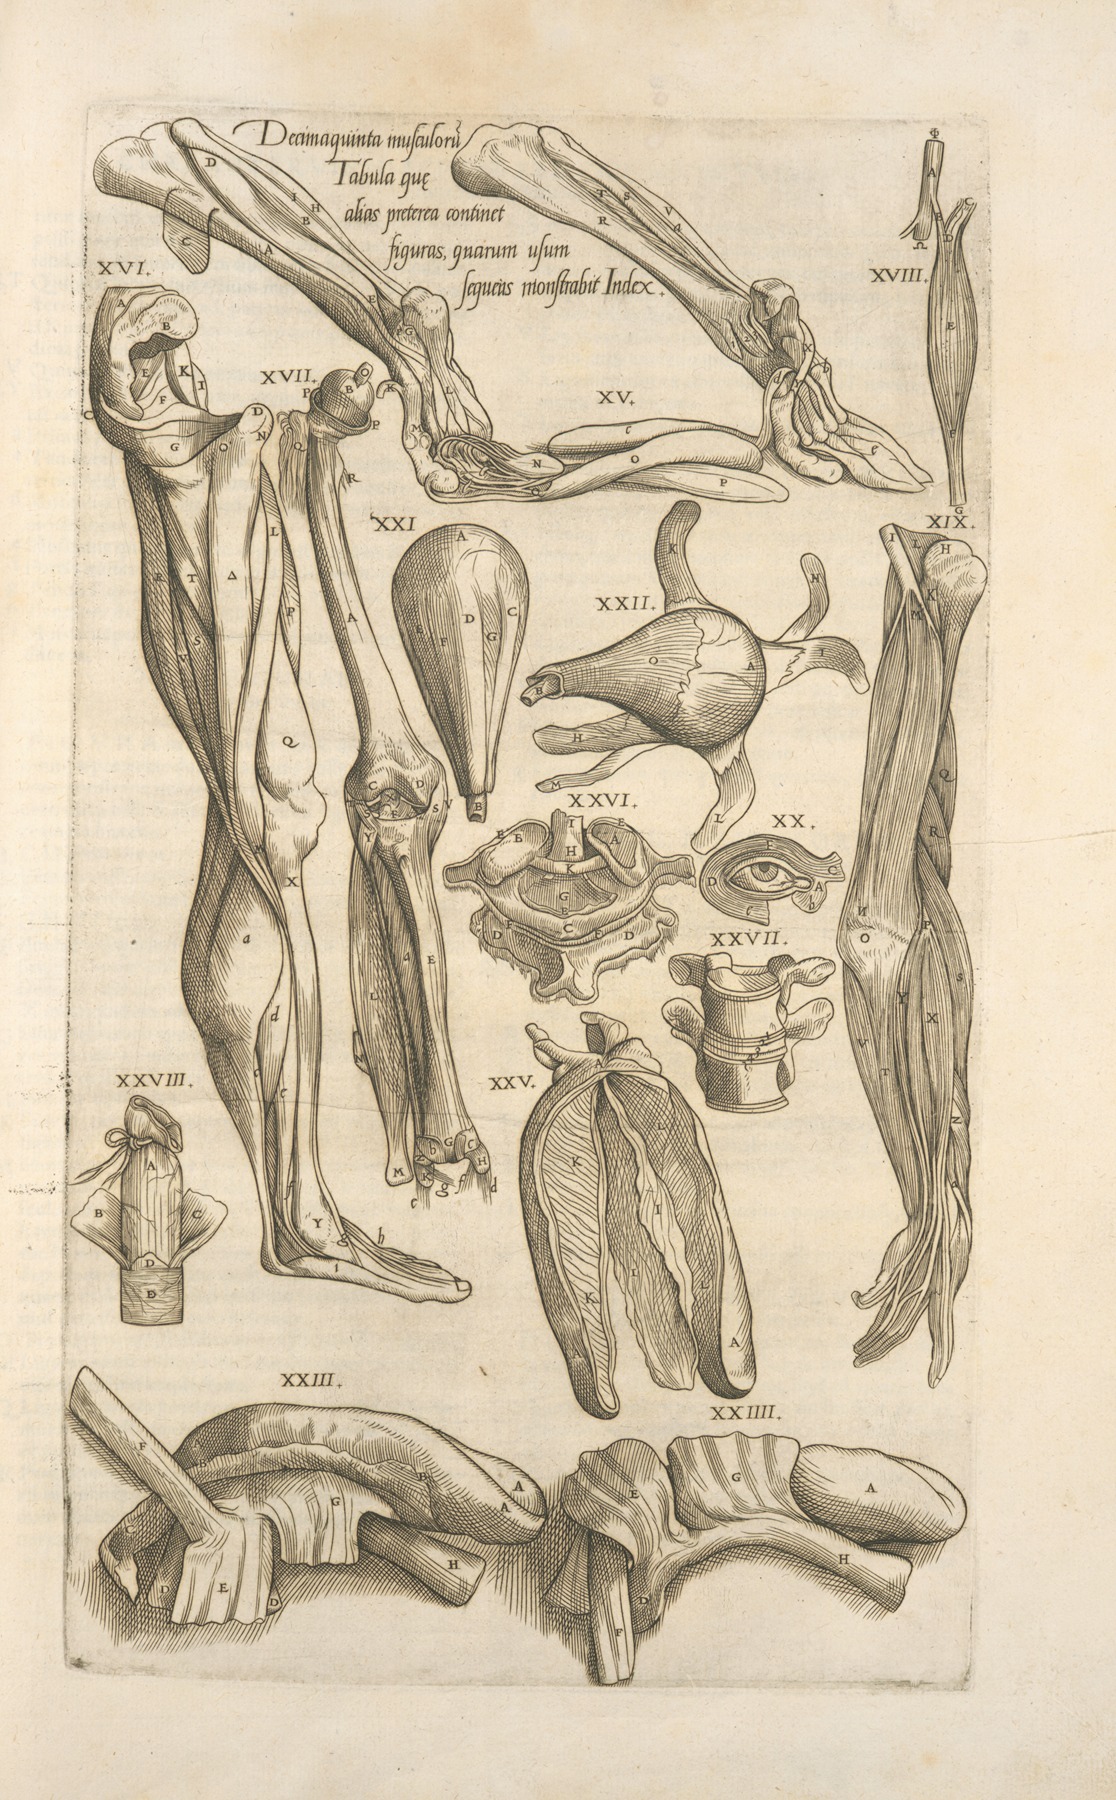 Thomas Geminus - Decima quinta musculorum tabula quae preterea continet figuras